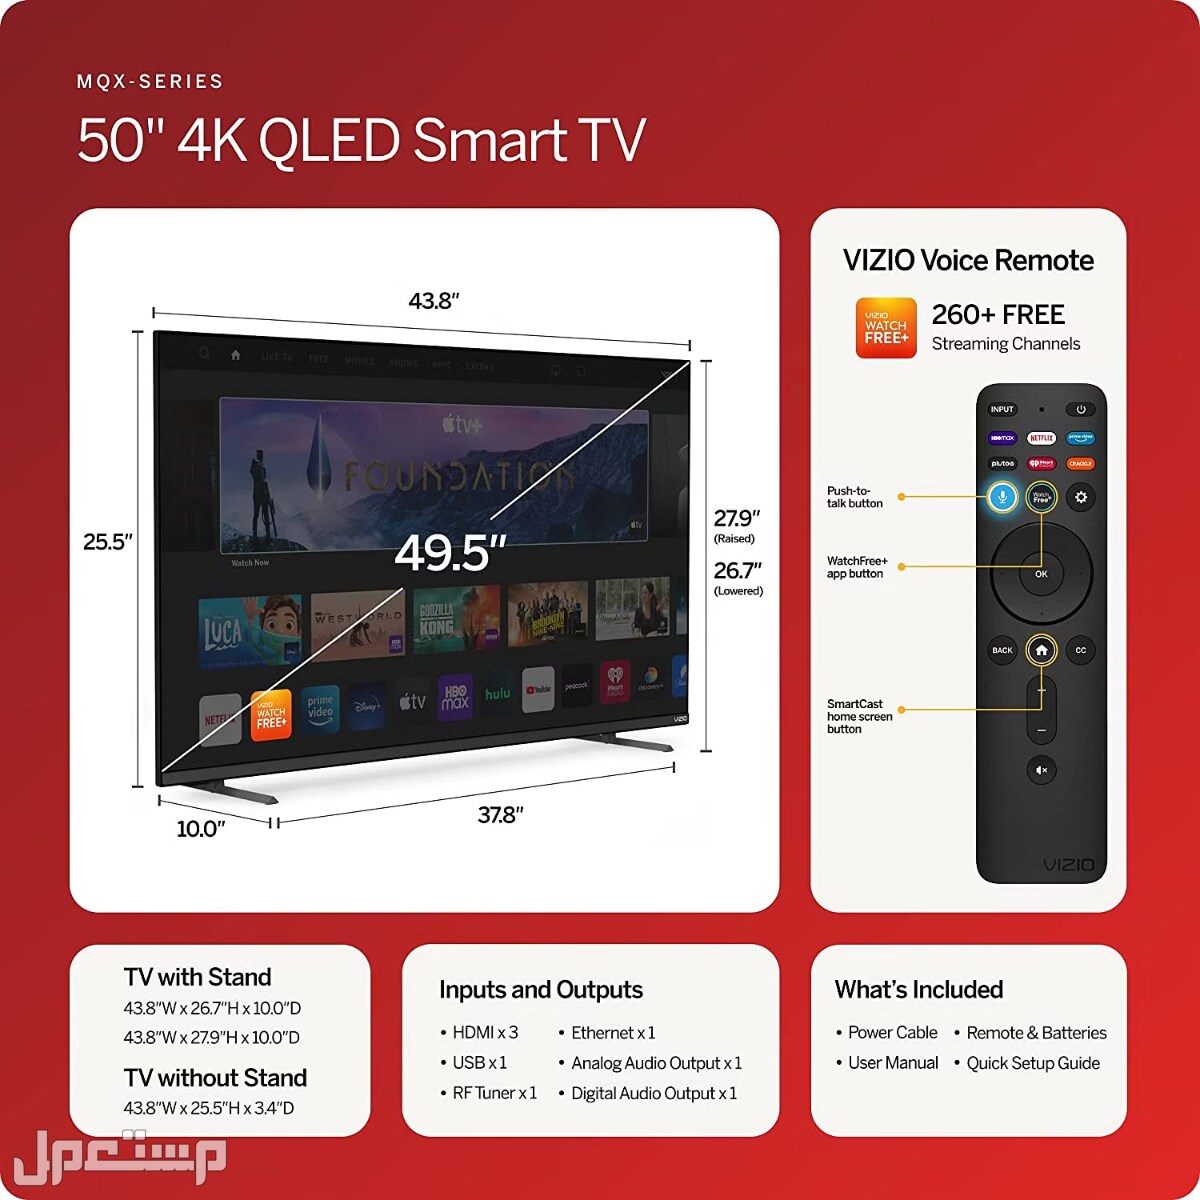 تلفزيونات فيزيو.. المواصفات والأسعار في لبنان تلفزيون فيزيو VIZIO 50 بوصة MQX Series Premium 4K QLED HDR Smart TV